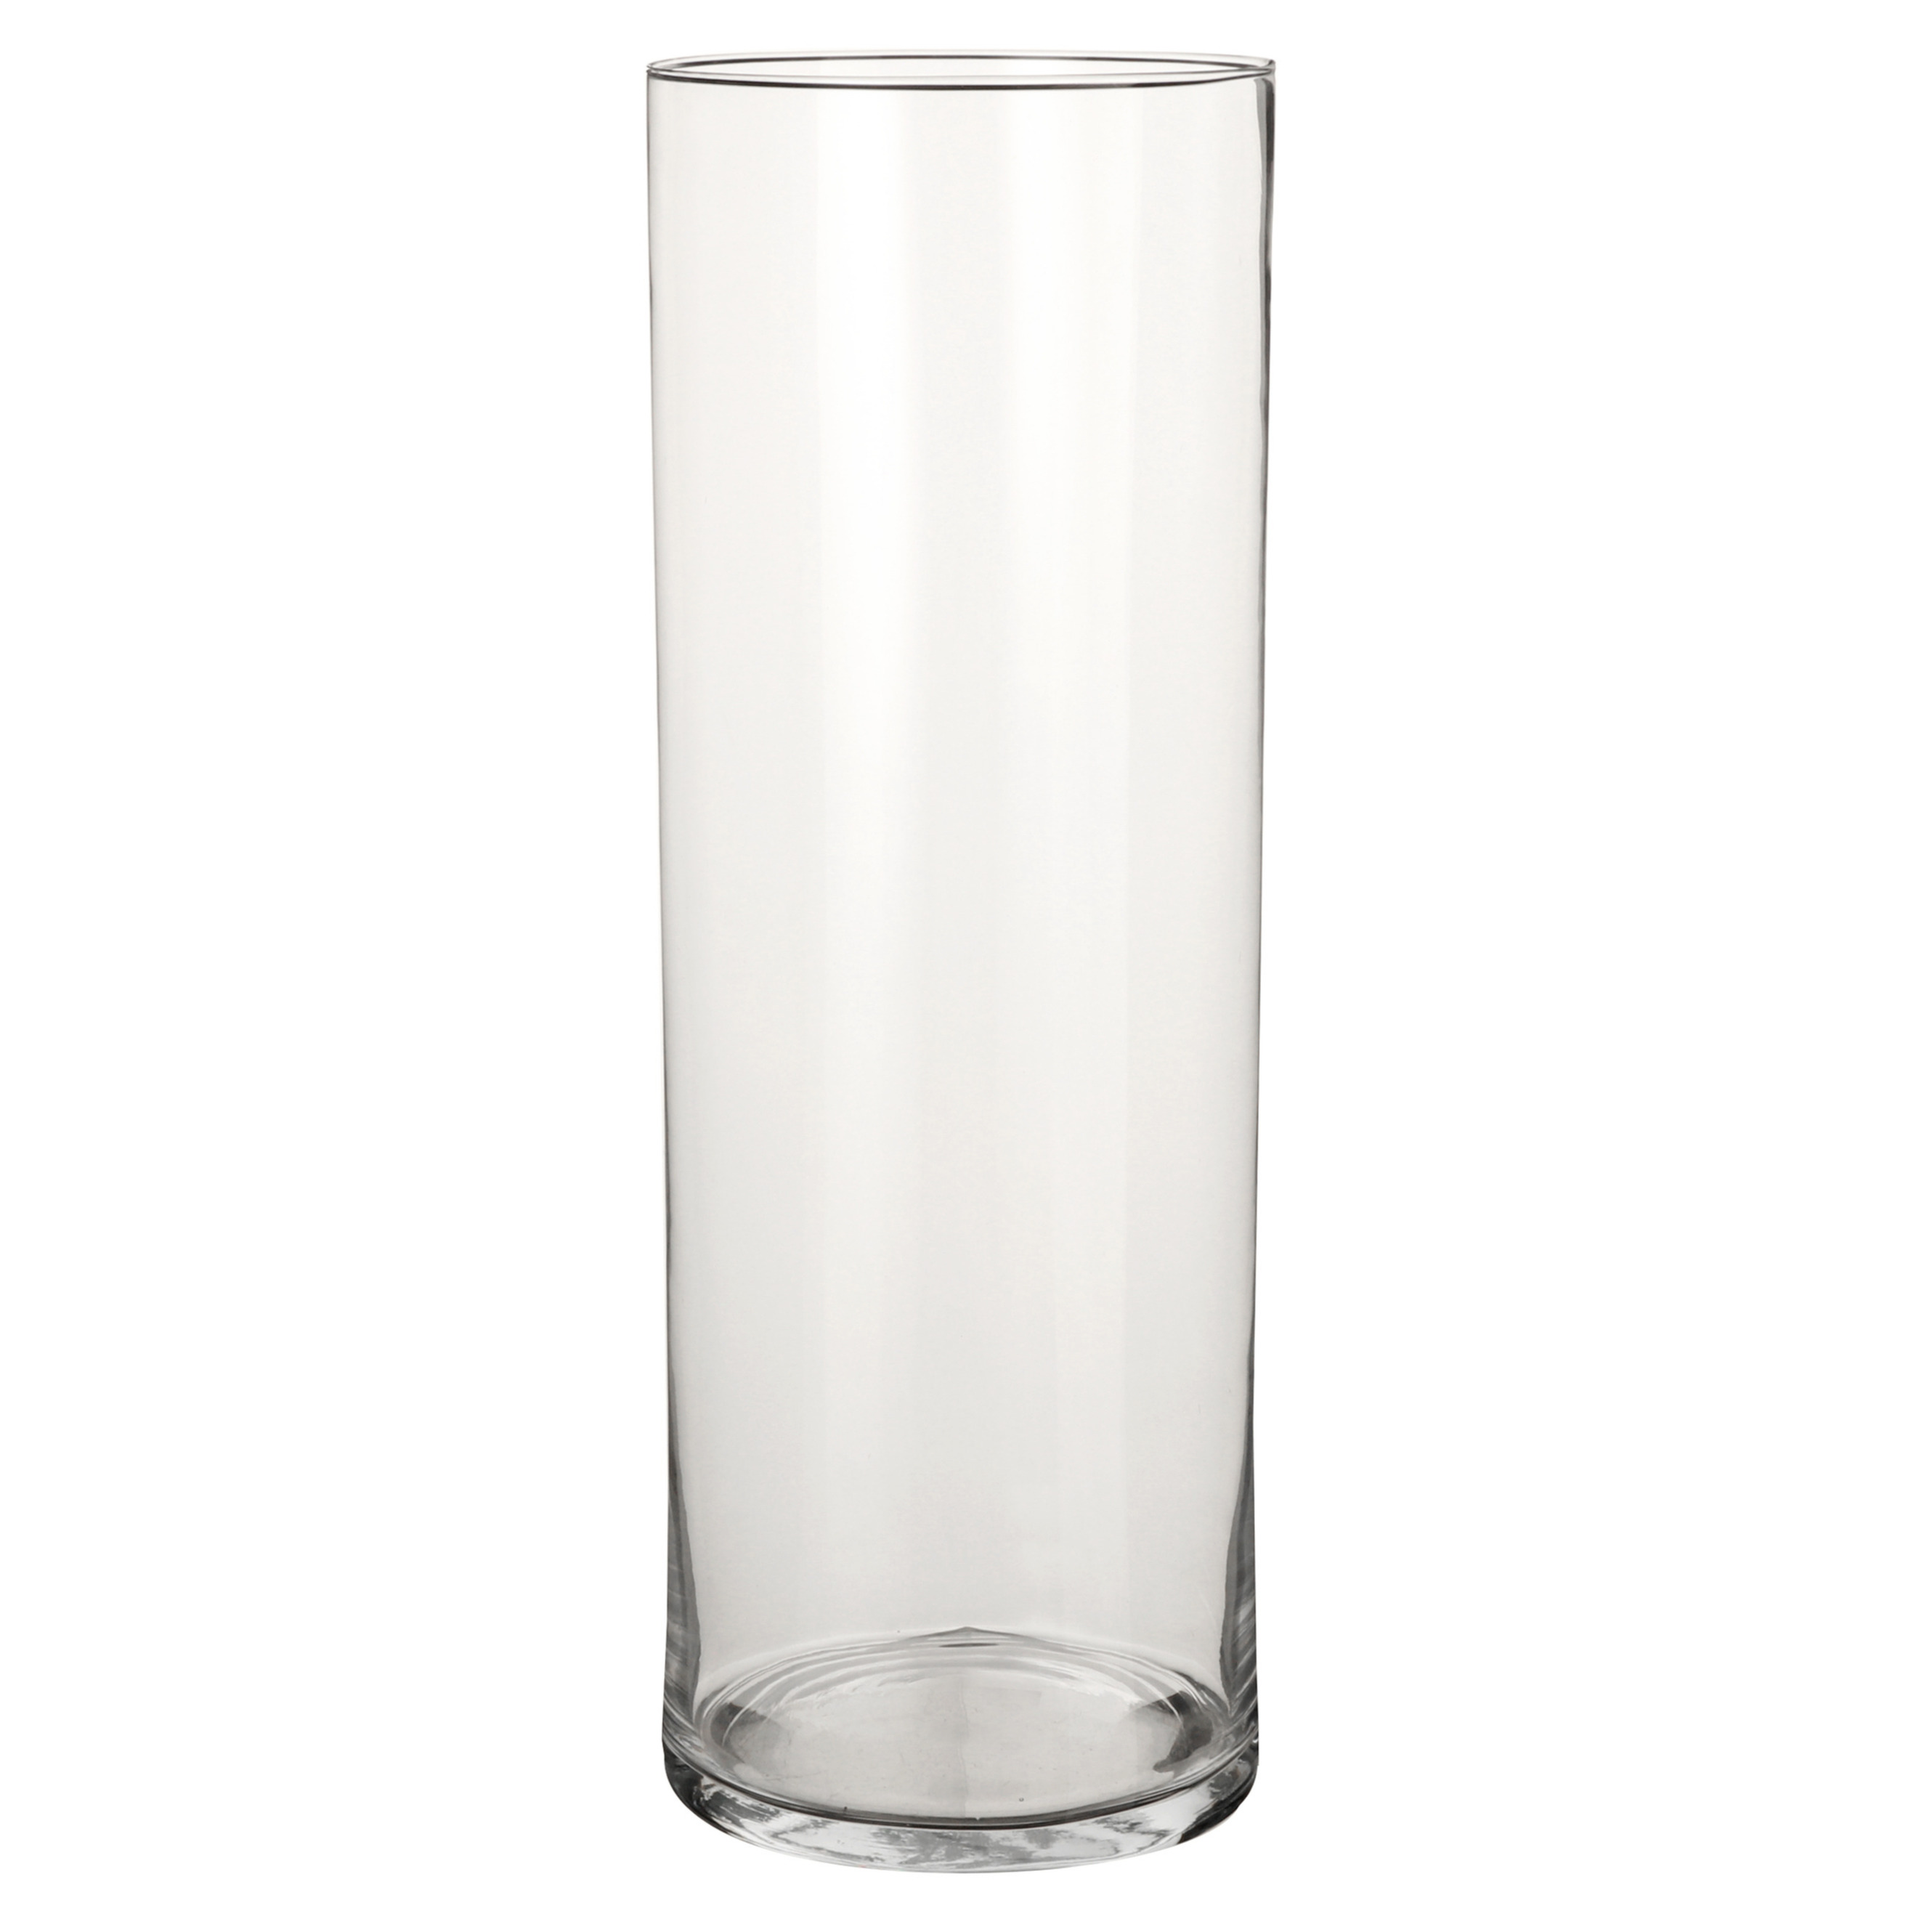 1x Glazen cilinder vaas-vazen 55 cm rond